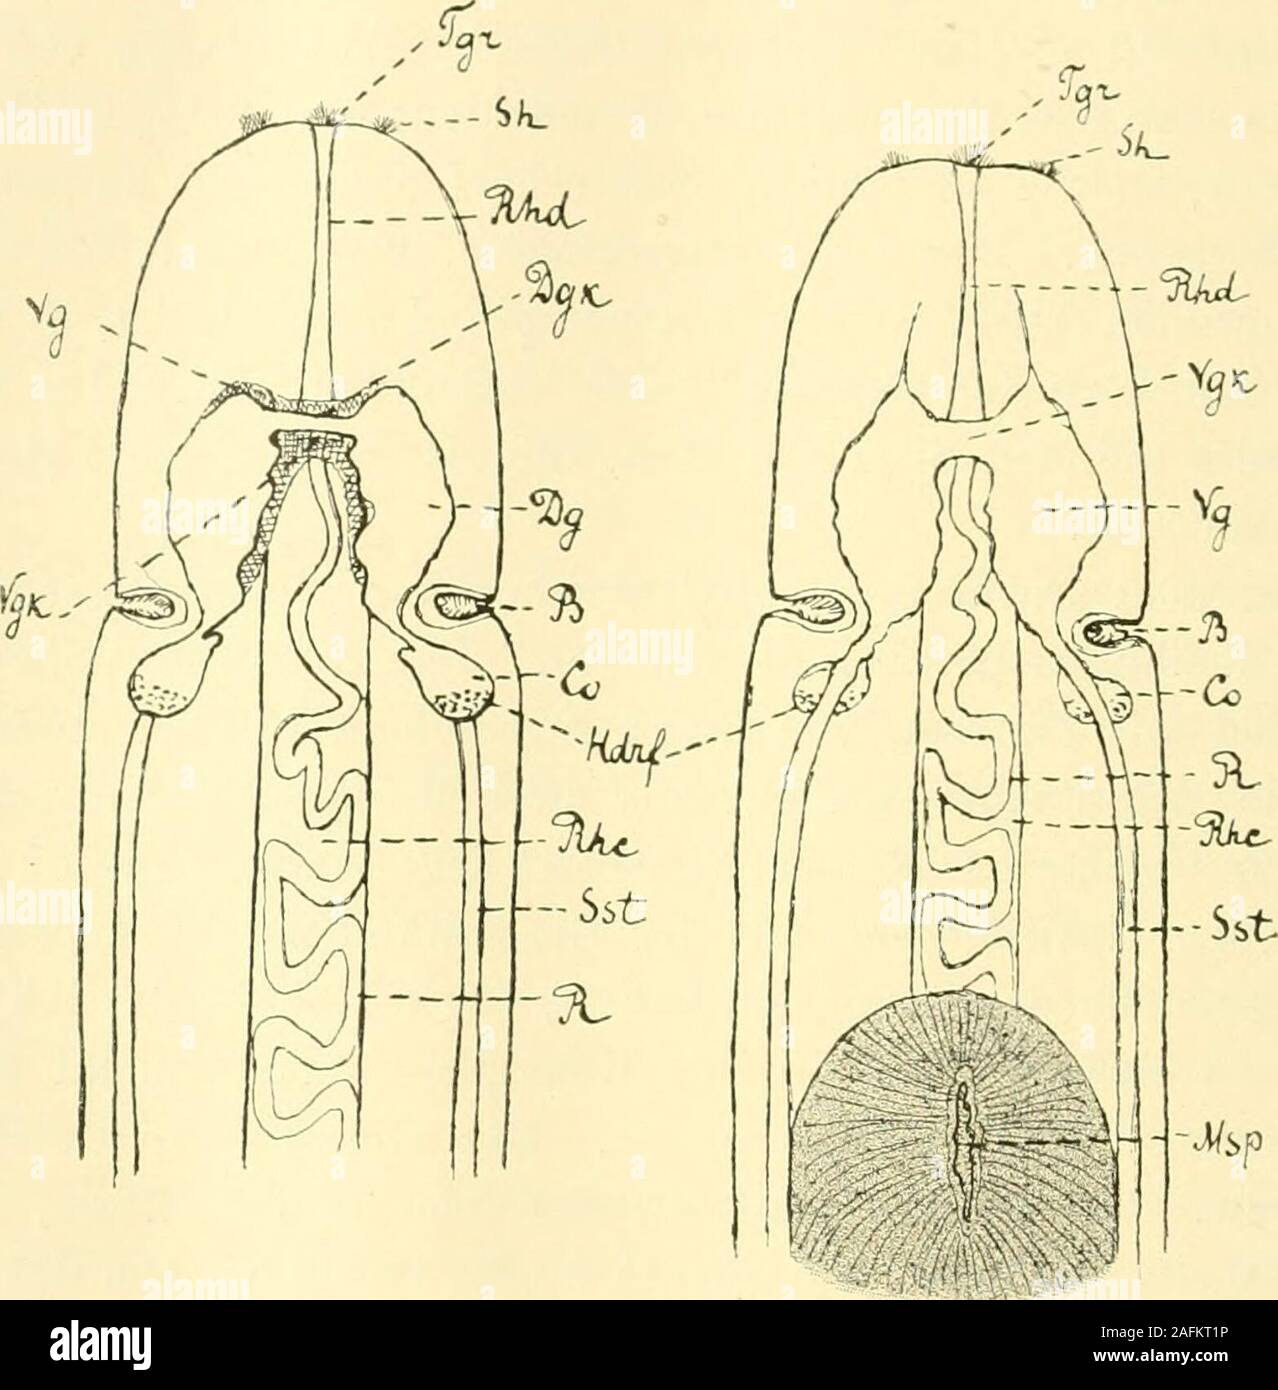 . Zeitschrift für wissenschaftliche Zoologie. ventralenGanglion entspringen zwei Nervenstränge - die Seitenstämme,welche dem entlang Körper verlaufen. Mit dem dorsalen ganglio Gebilde sindeigenartige - die Cerebralorgane - verwachsen. Wasdas centrale Nervensystem anbetrifft, così kann man hier die Rindevon der centralen Substanz unterscheiden. Das periphere Nervensystembesteht aus Nerven und "Nervenschichten" (cittadino). Zu den ersterengehören die Rücken-, Schlund-, Kopf- und Rüsselnerven. Die Cerebralorgane und ihre erweiterten Mündungen - lang unddicht bewimperte Buchten - bilden die Sinnesorga Foto Stock